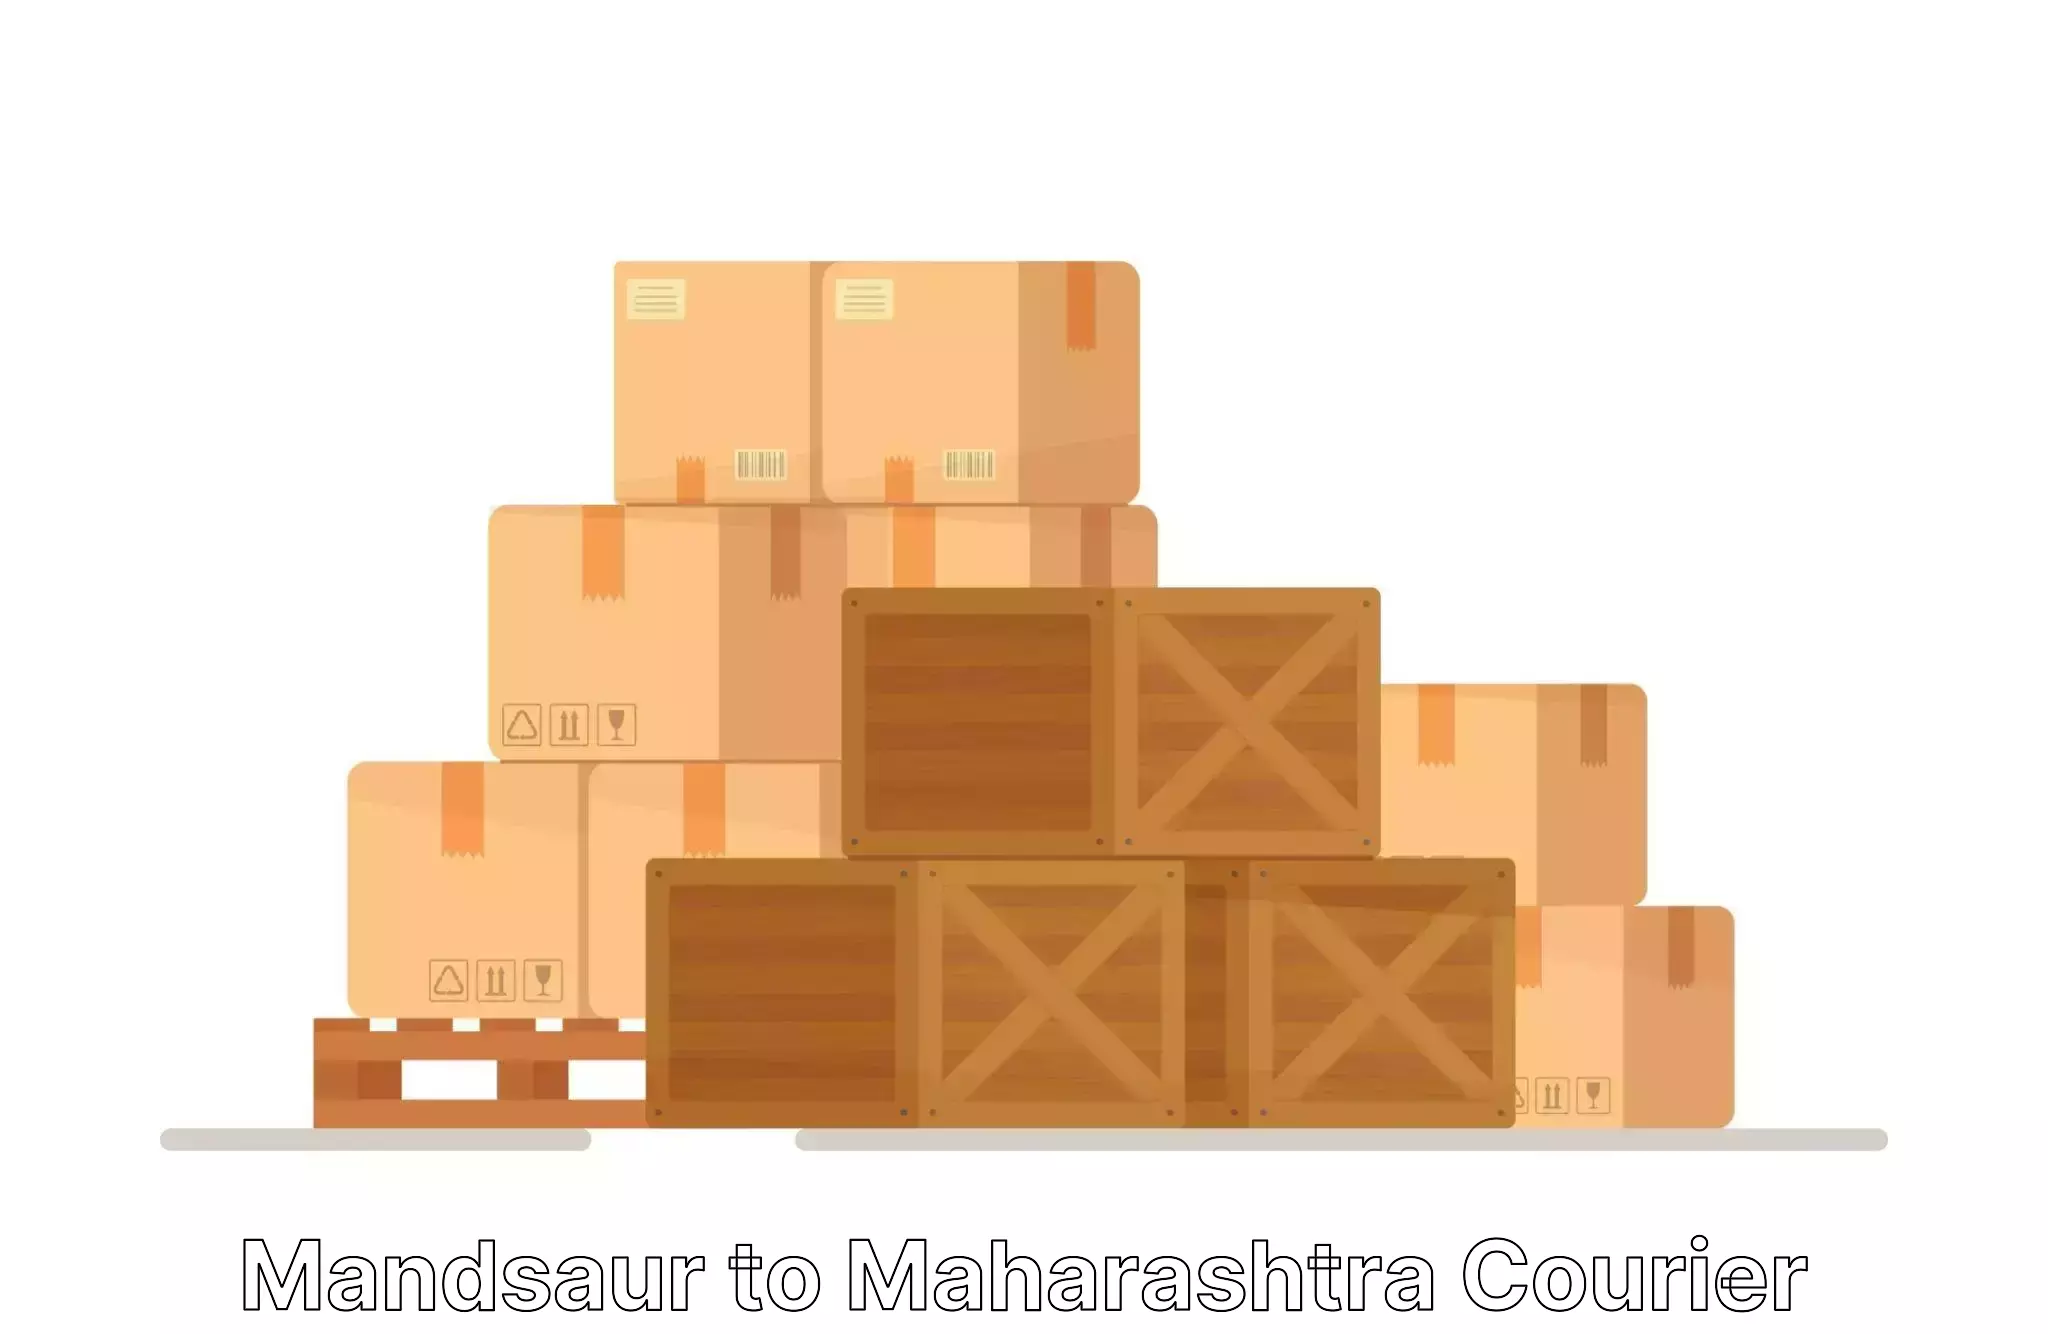 Moving and storage services Mandsaur to Mahabaleshwar